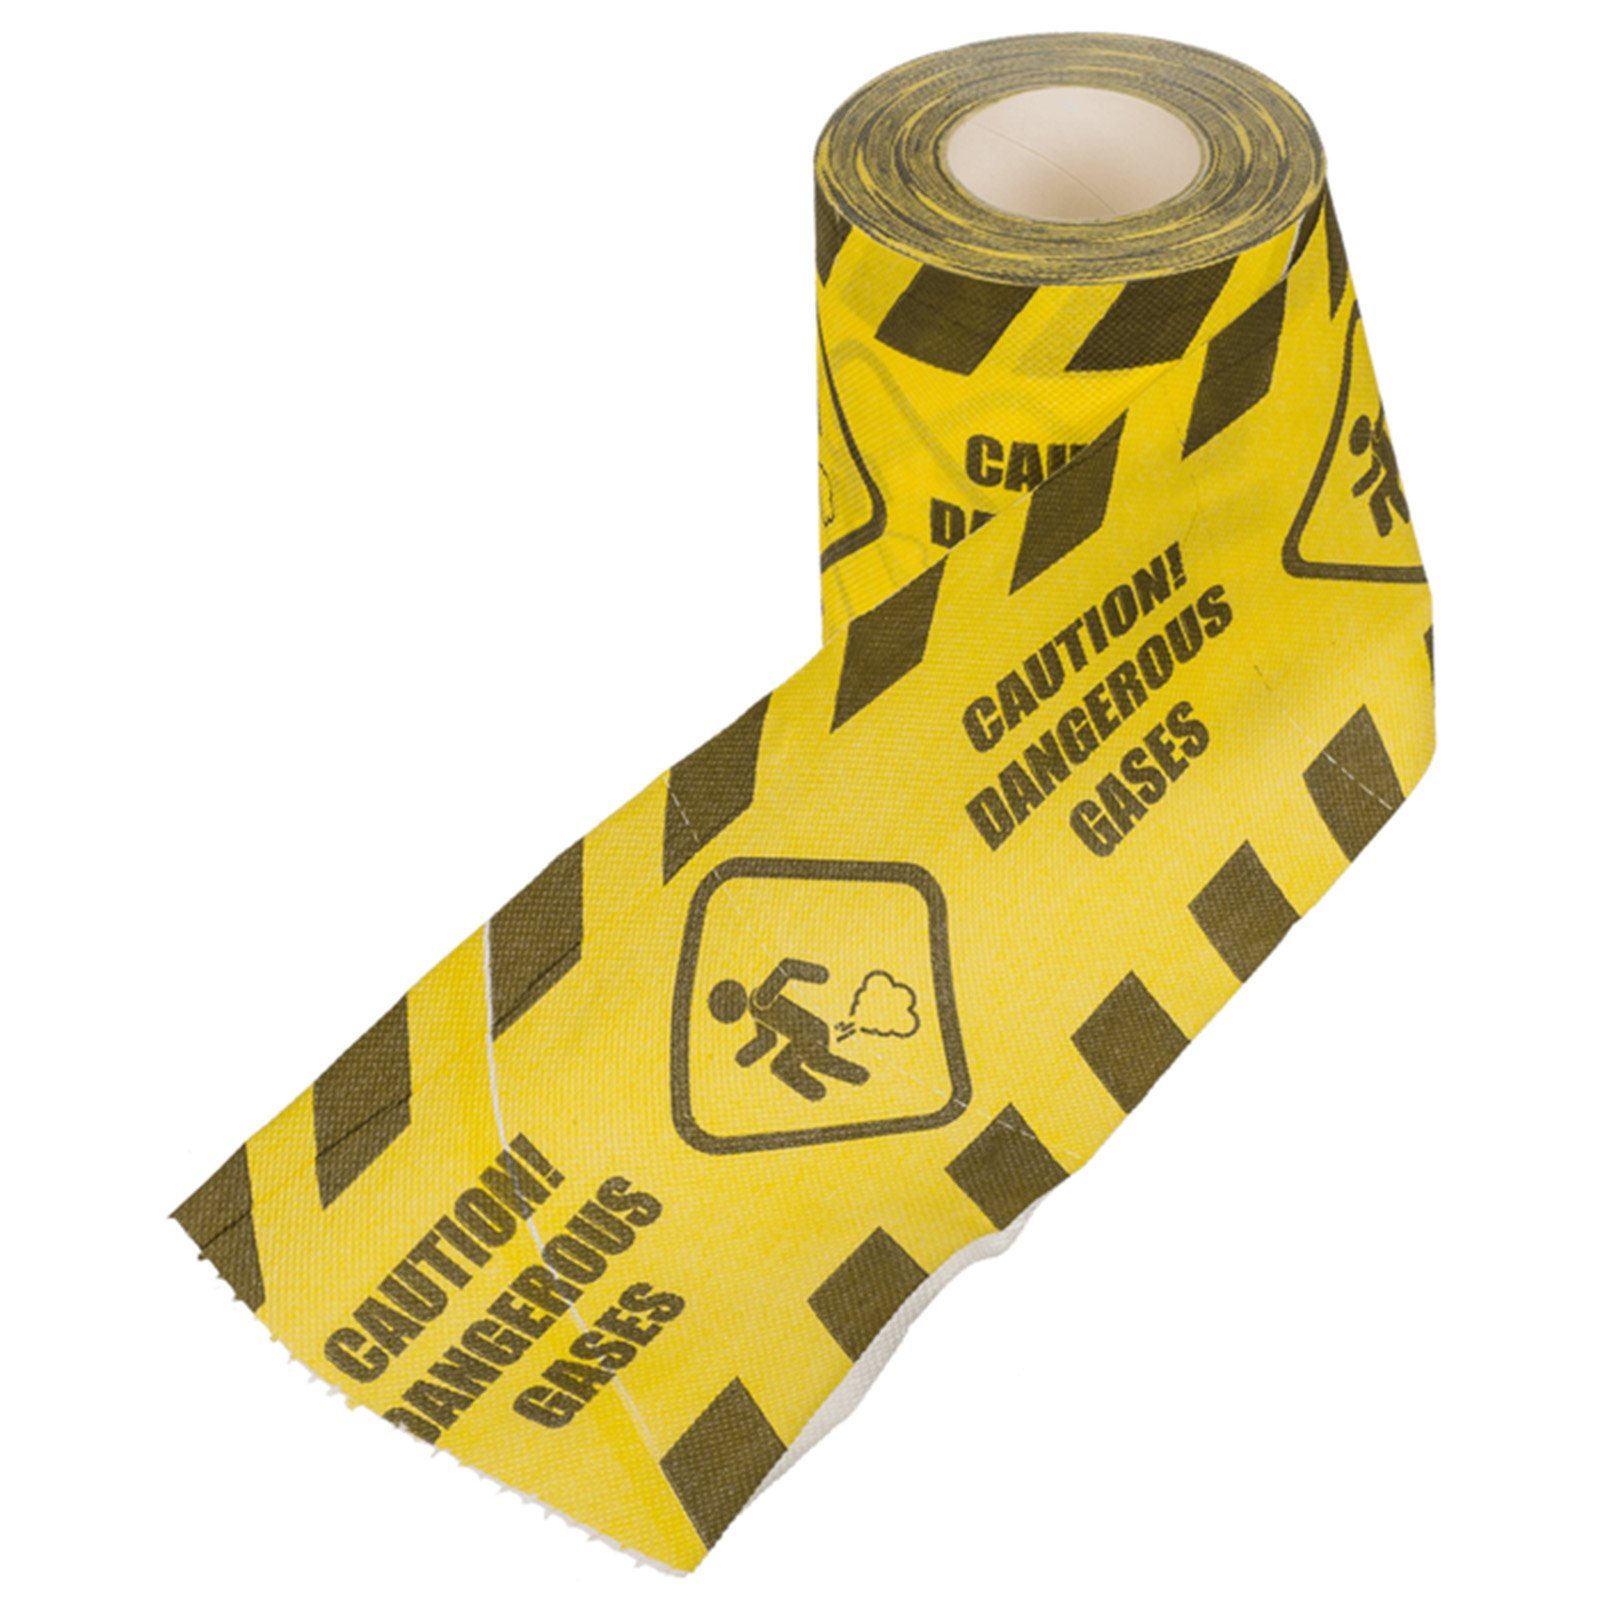 of Blue Toilettenpapier Caution Furz Out mit the Piktrogramm Gases Dangerous Papierdekoration